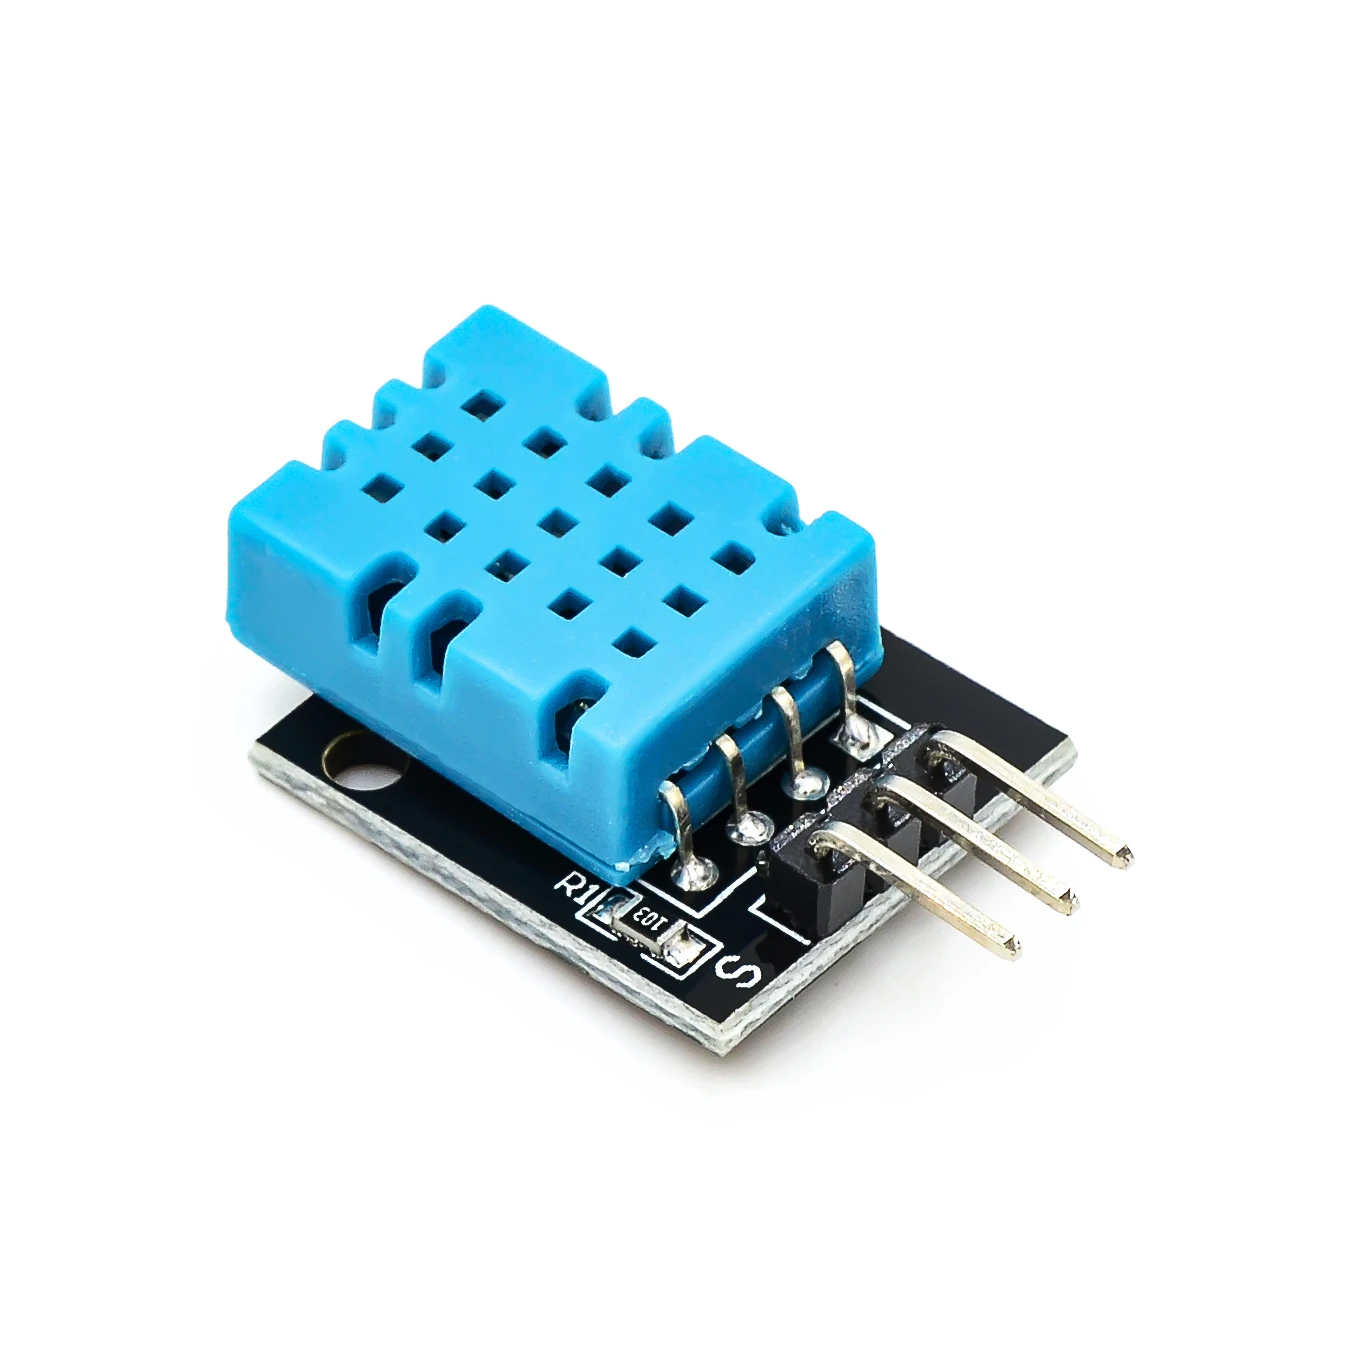 Okos 3pin KY-015 DHT-11 DHT11 Digitális Hőmérséklet, a Relatív Páratartalom Érzékelő Modul + PCB az Arduino DIY Starter Kit